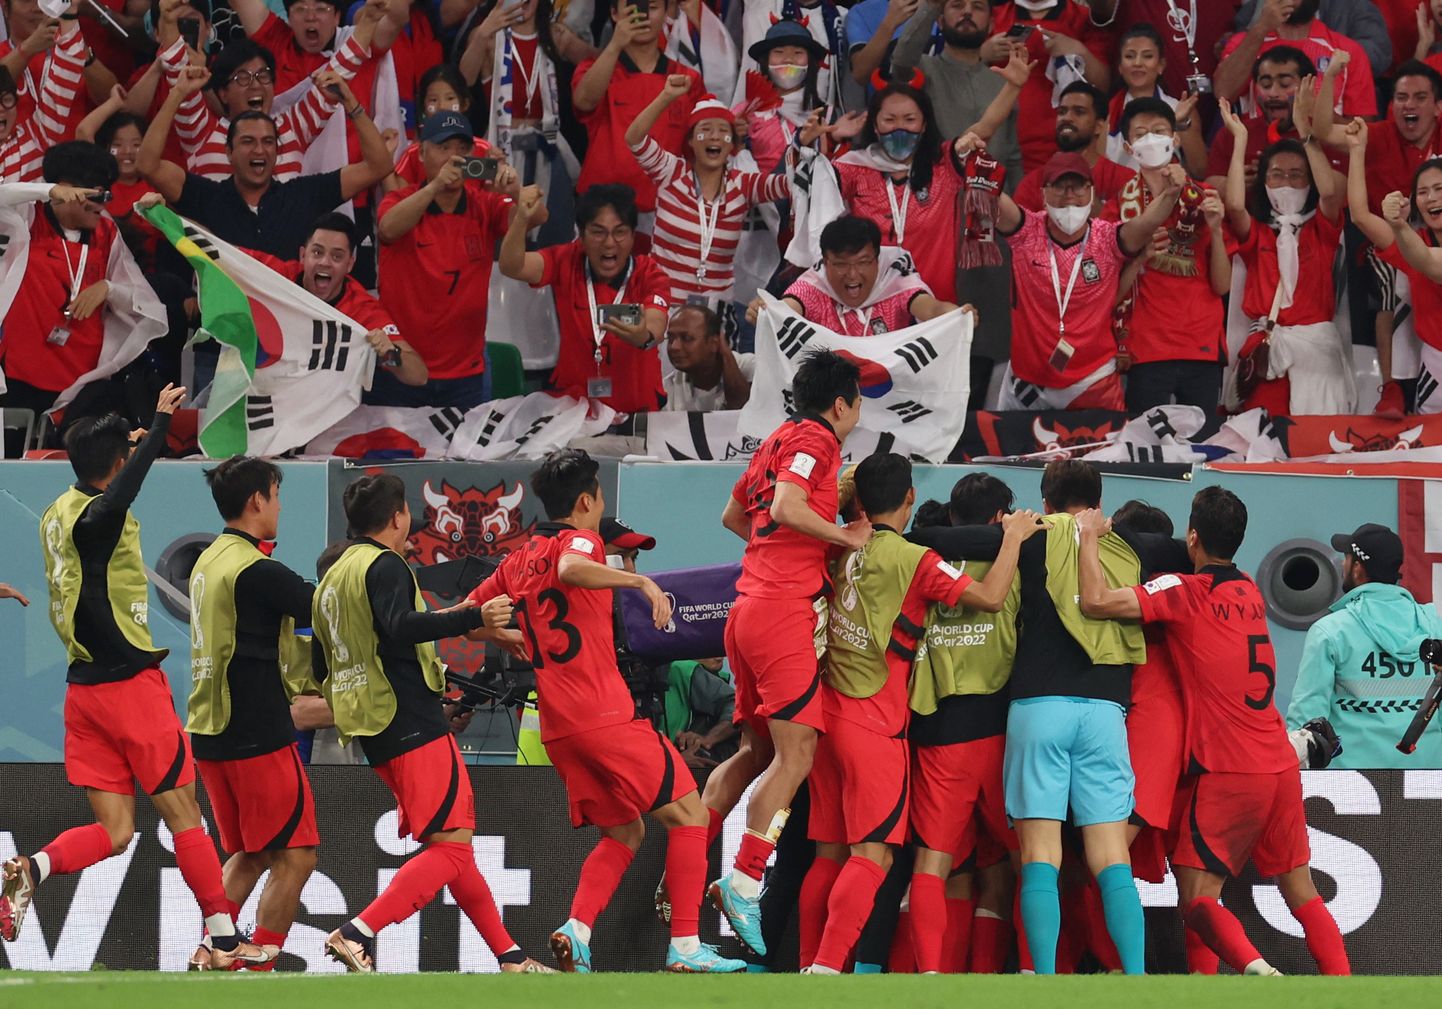 Lõuna-Korea mängijad väravat tähistamas.